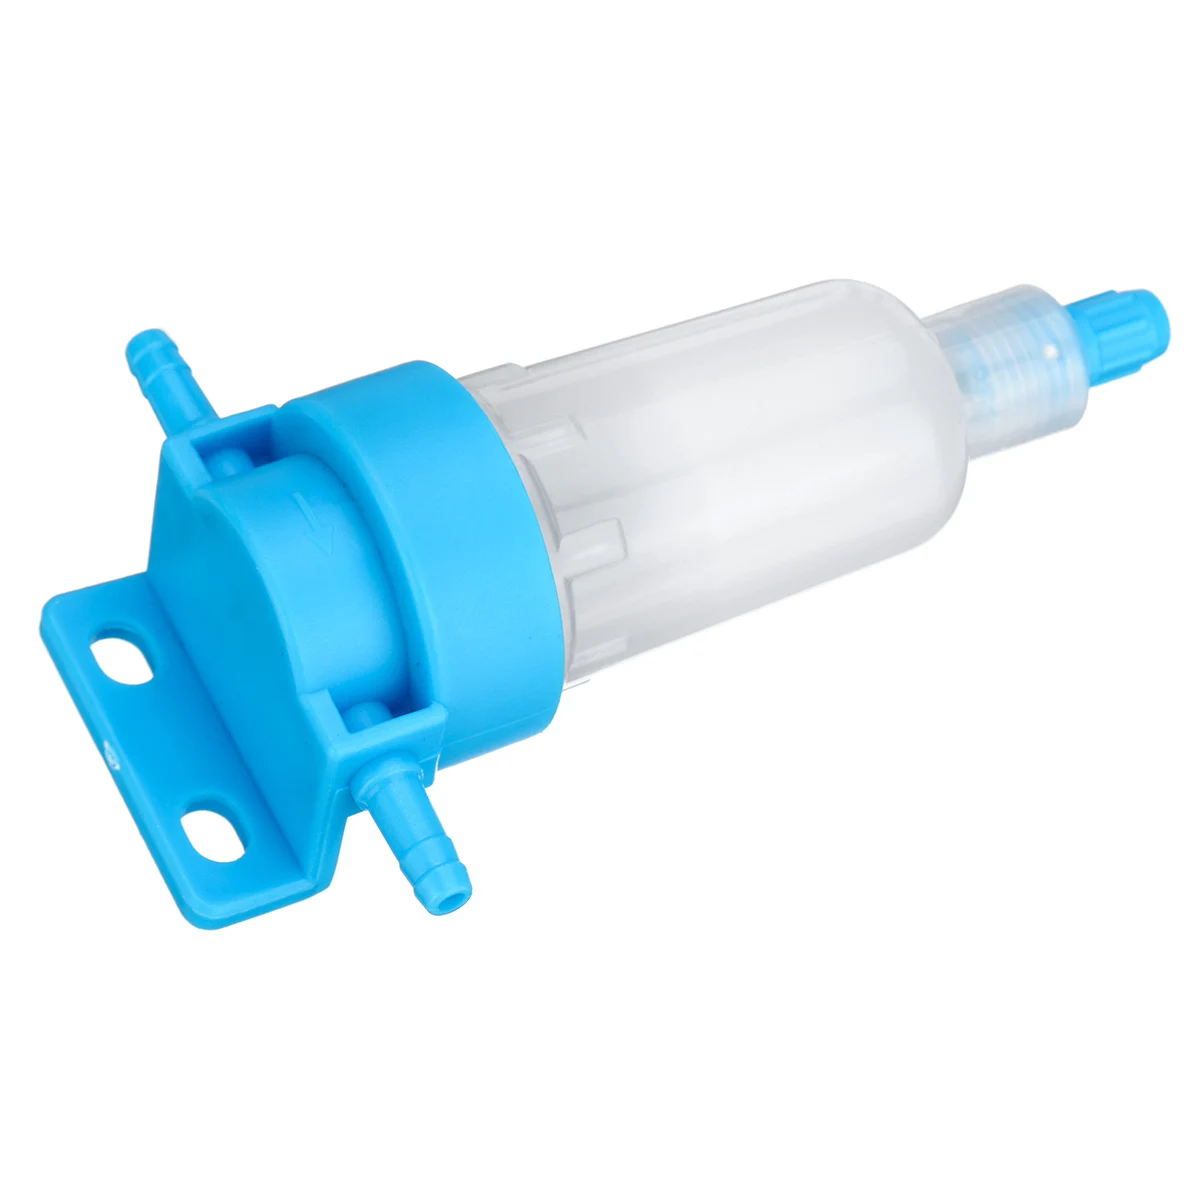 Фильтр для воздушного компрессора 40 микрон водоотделитель ловушка Набор инструментов с регулятор давления частицы светового фильтра